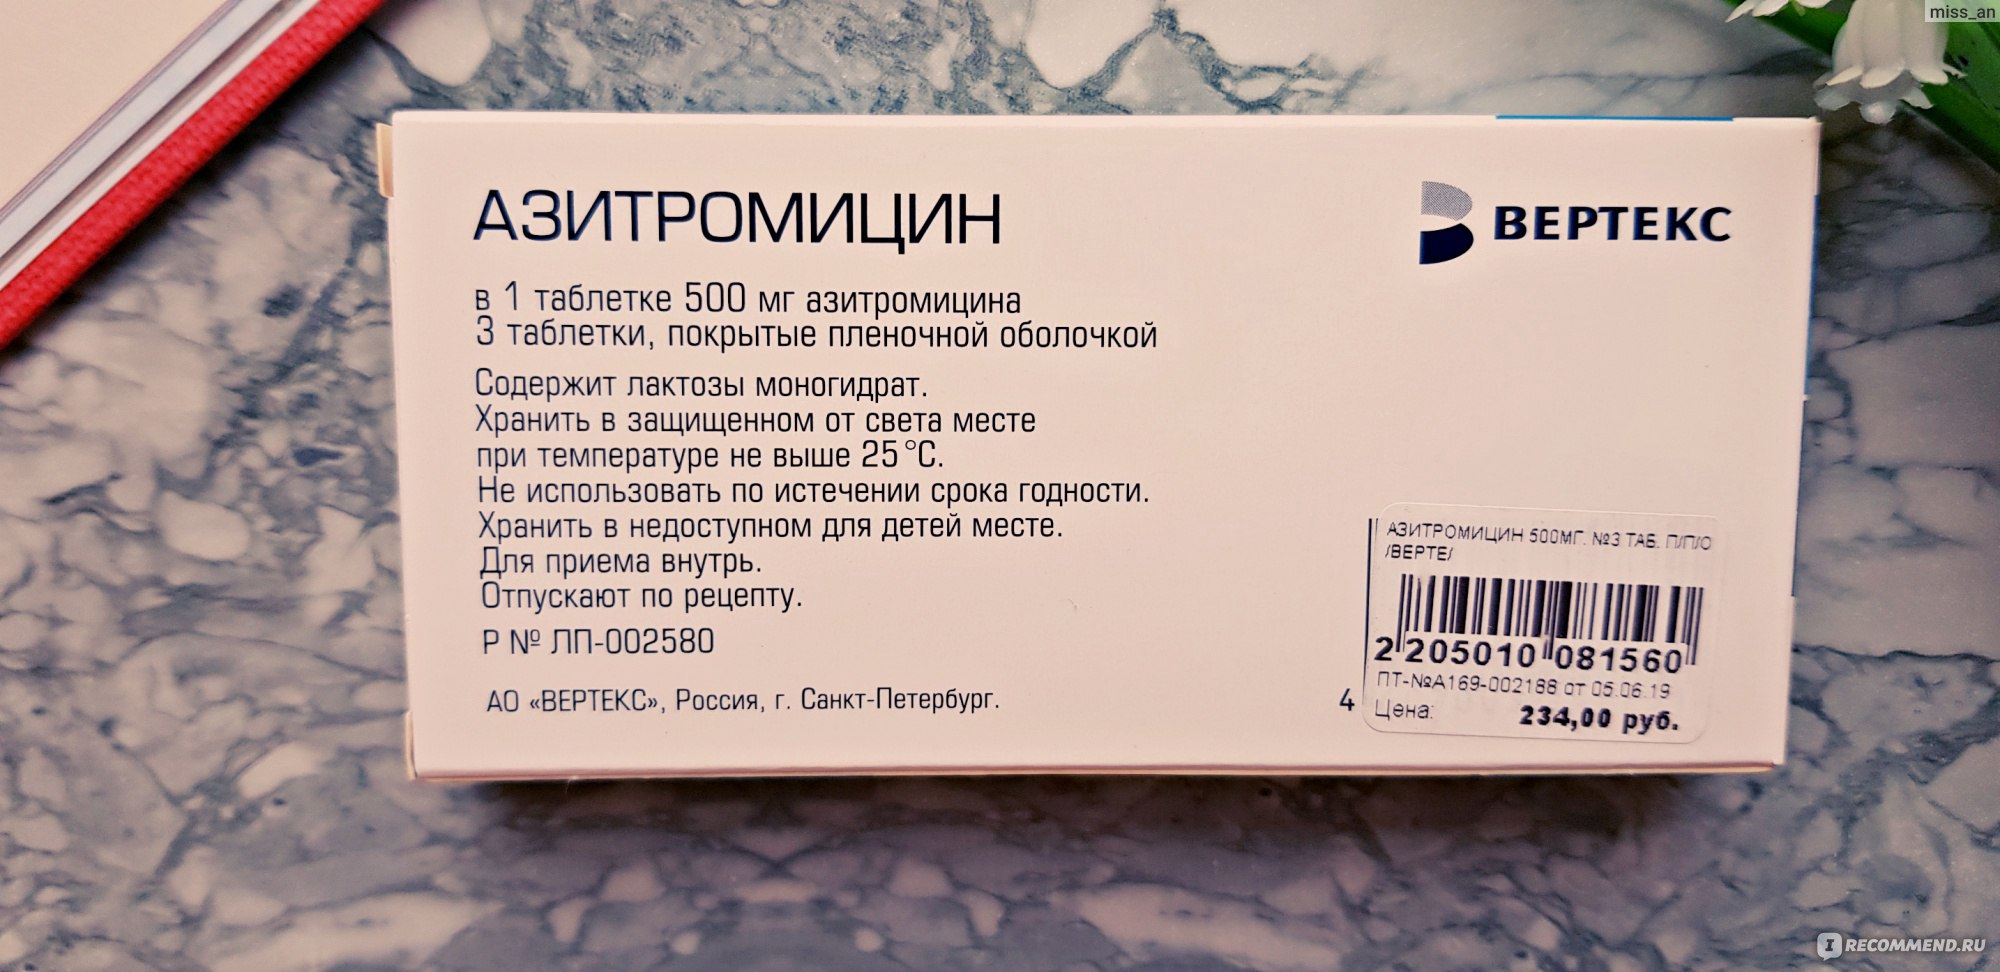 Антибиотик Вертекс Азитромицин 500 мг - «Хороший препарат с неприятными .